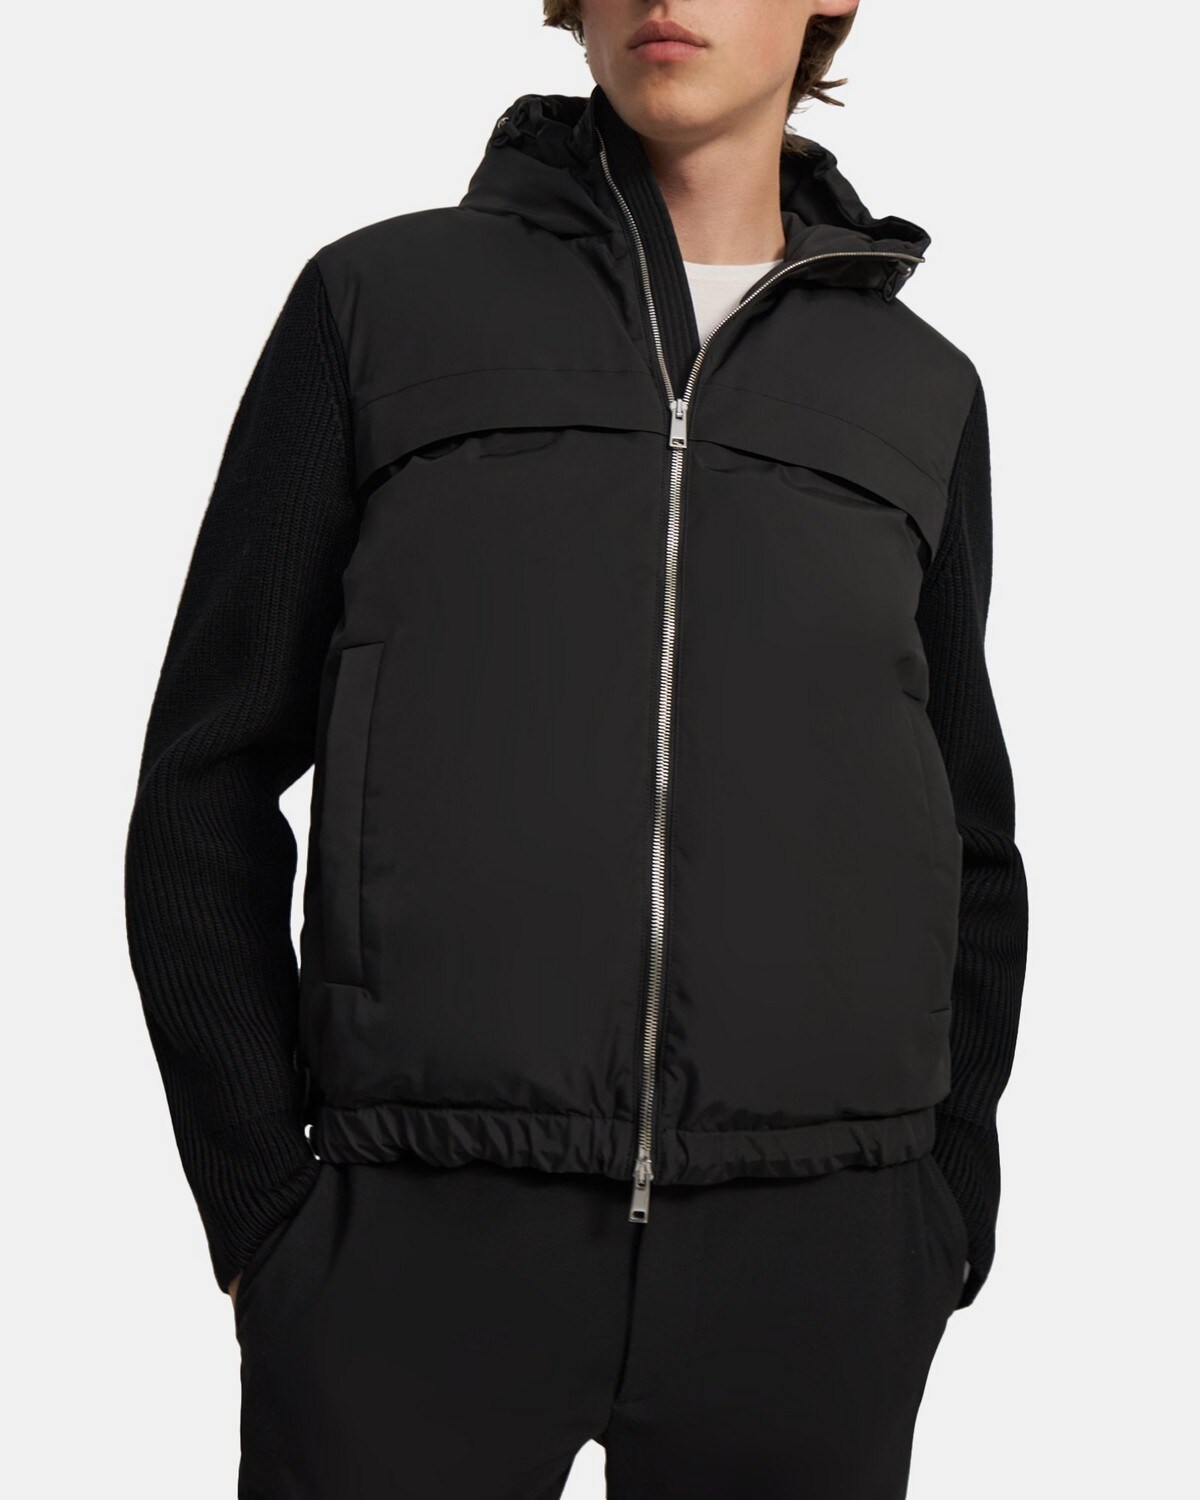 띠어리 맨 후드 재킷 Theory Hooded Jacket in Water-Resistant Polyester,BLACK